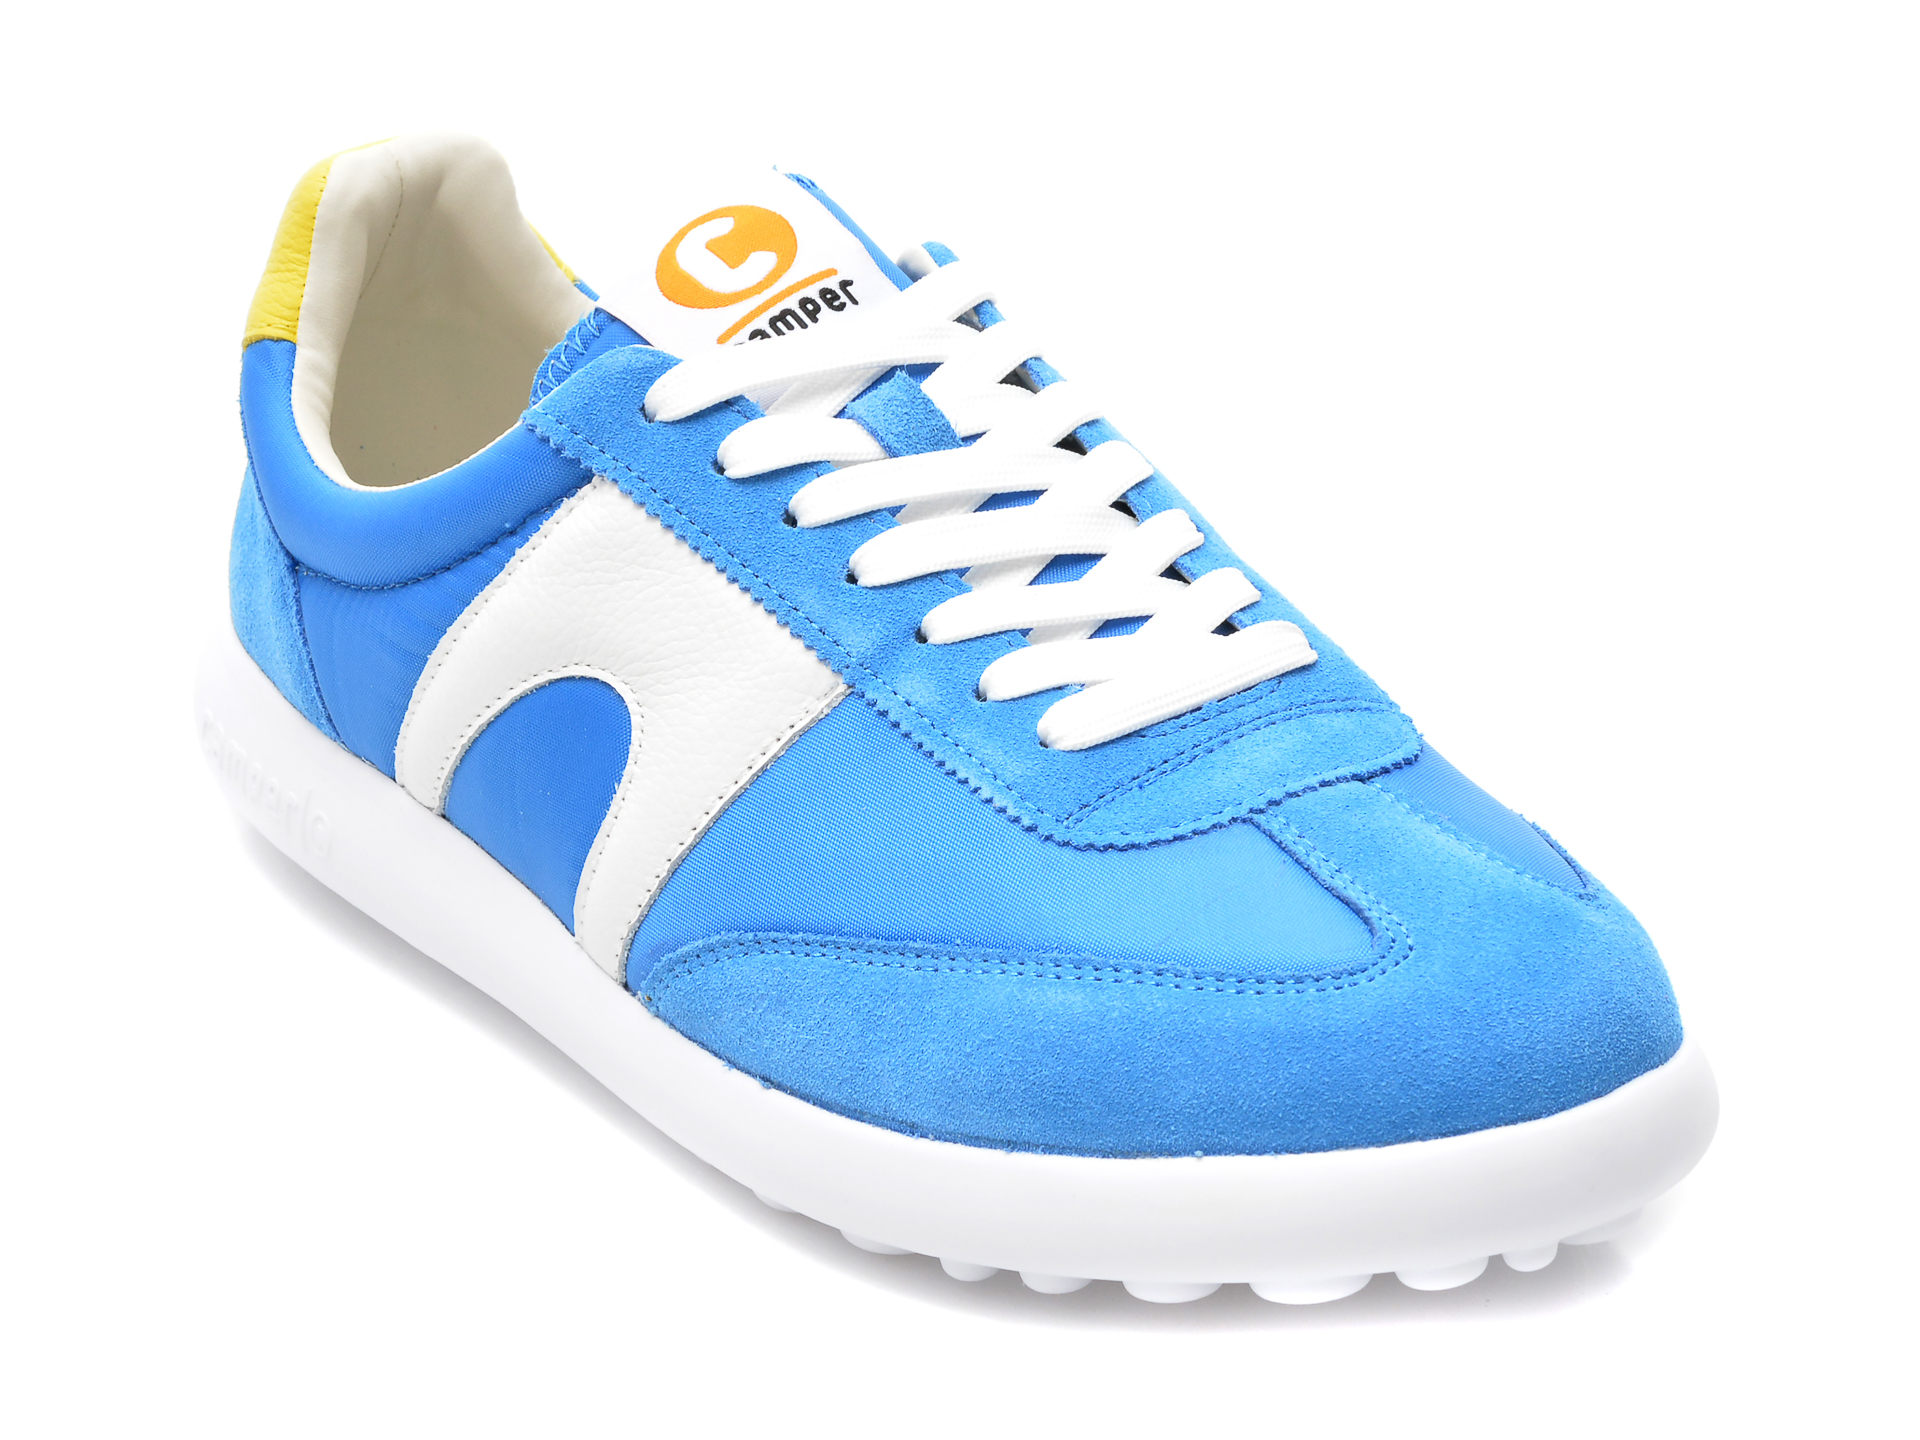 Pantofi sport CAMPER albastri, K100545, din material textil si piele naturala Camper